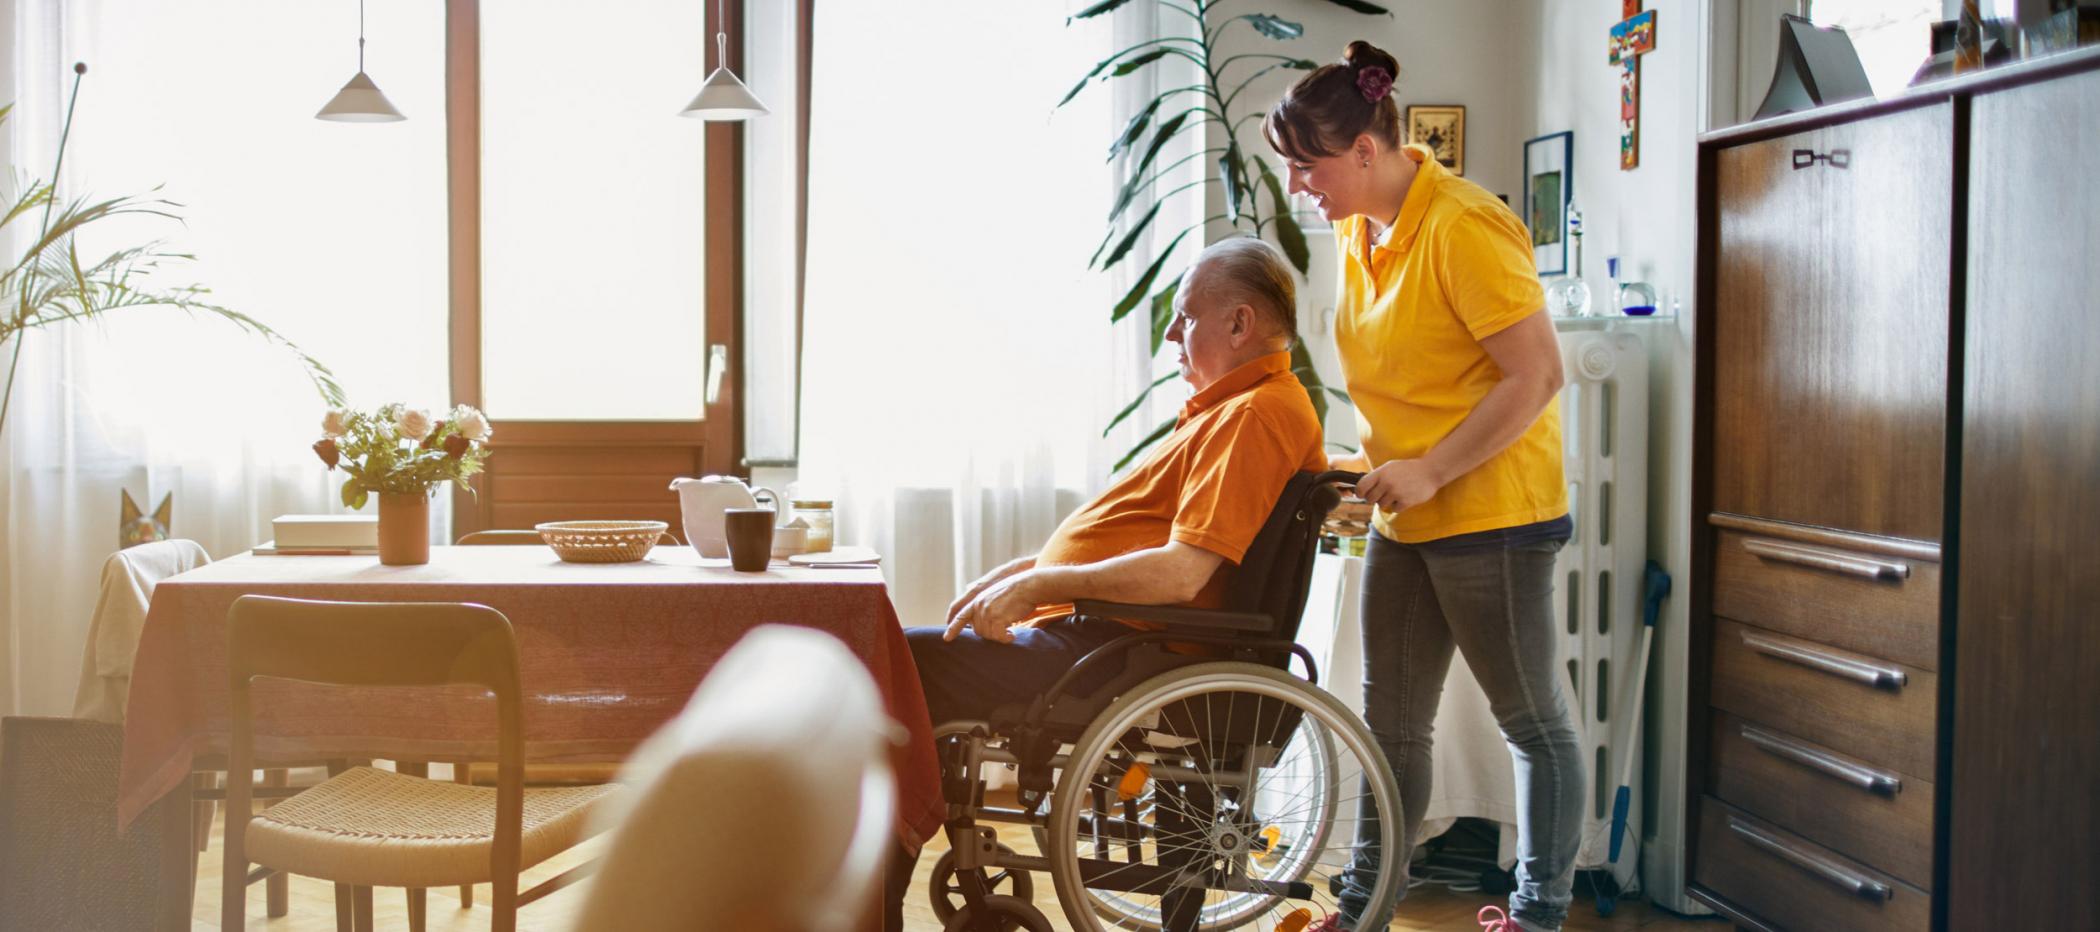 Pflegefachkraft schiebt Kunden im Rollstuhl.